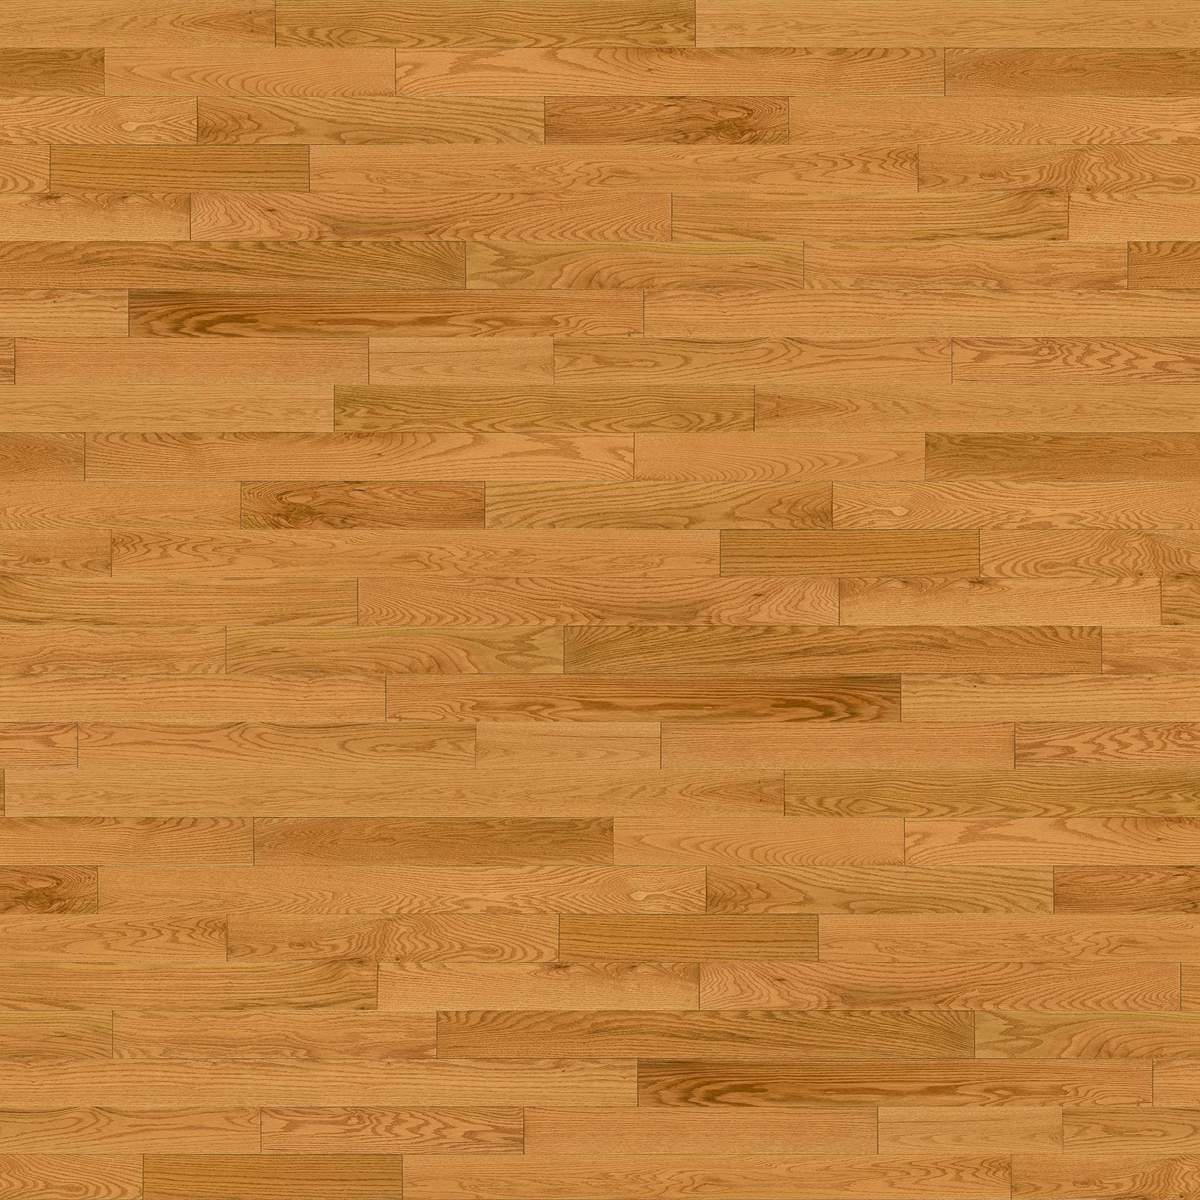 Prestige Hardwood Flooring, Prestige Engineered Hardwood Flooring